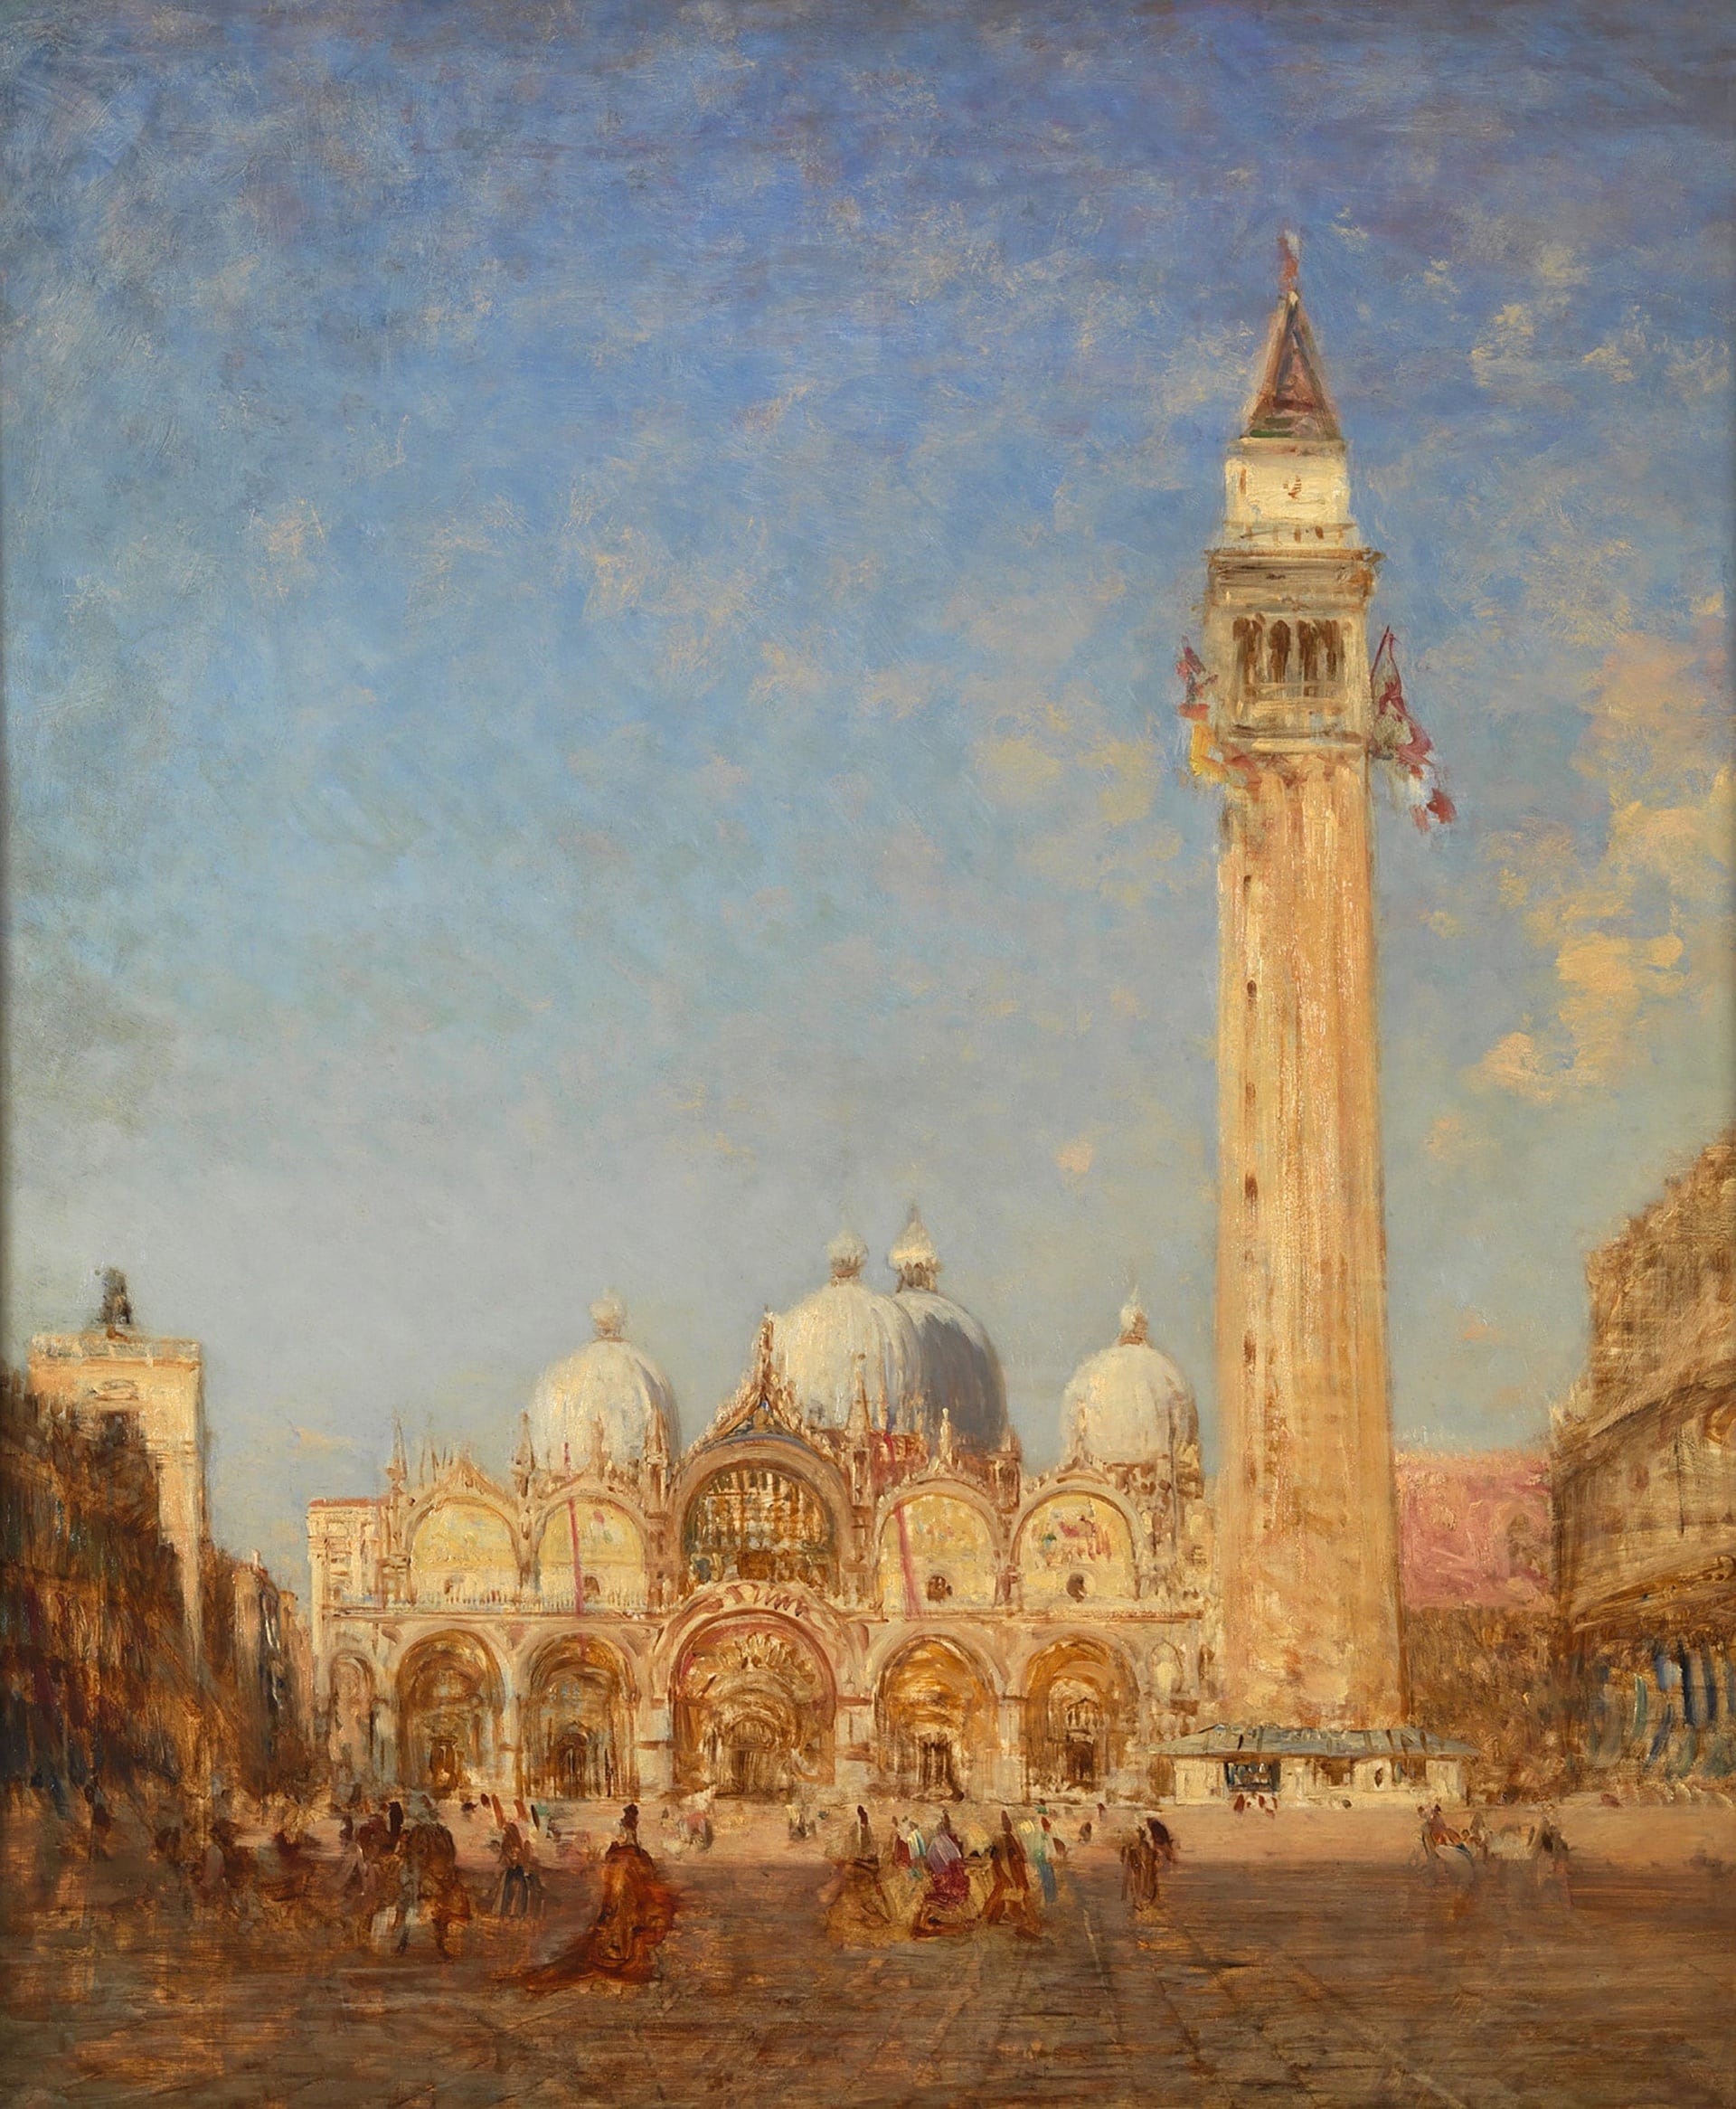 San Marco Meydanı ve &amp;amp;Ccedil;an Kulesi, 1880 - 1890, Ahşap &amp;amp;uuml;zerine yağlıboya, 82 x 68 cm., Ziem M&amp;amp;uuml;zesi Koleksiyonu